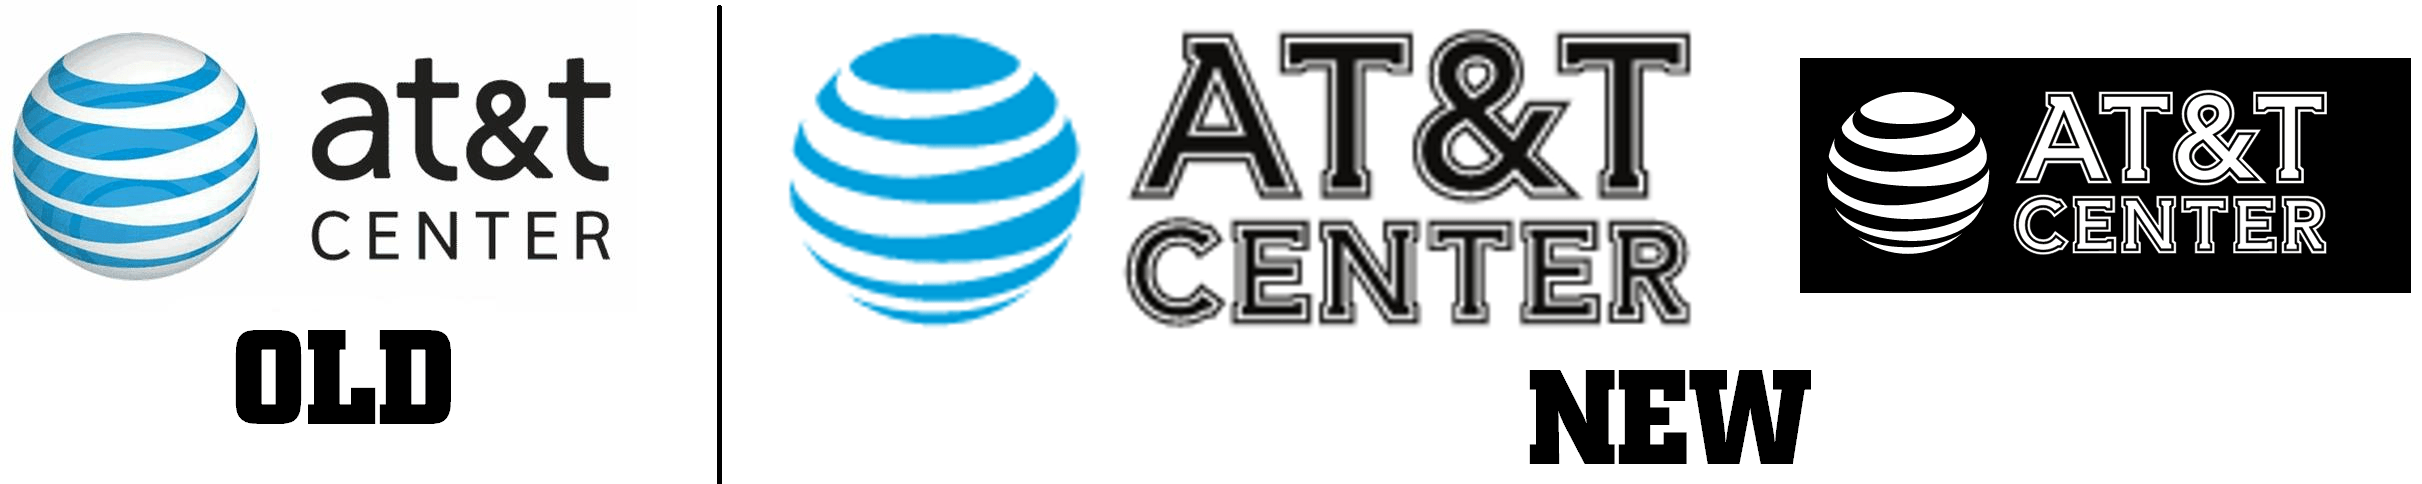 New AT&T Logo - AT&T Center New Logo Logos Creamer's Sports Logos